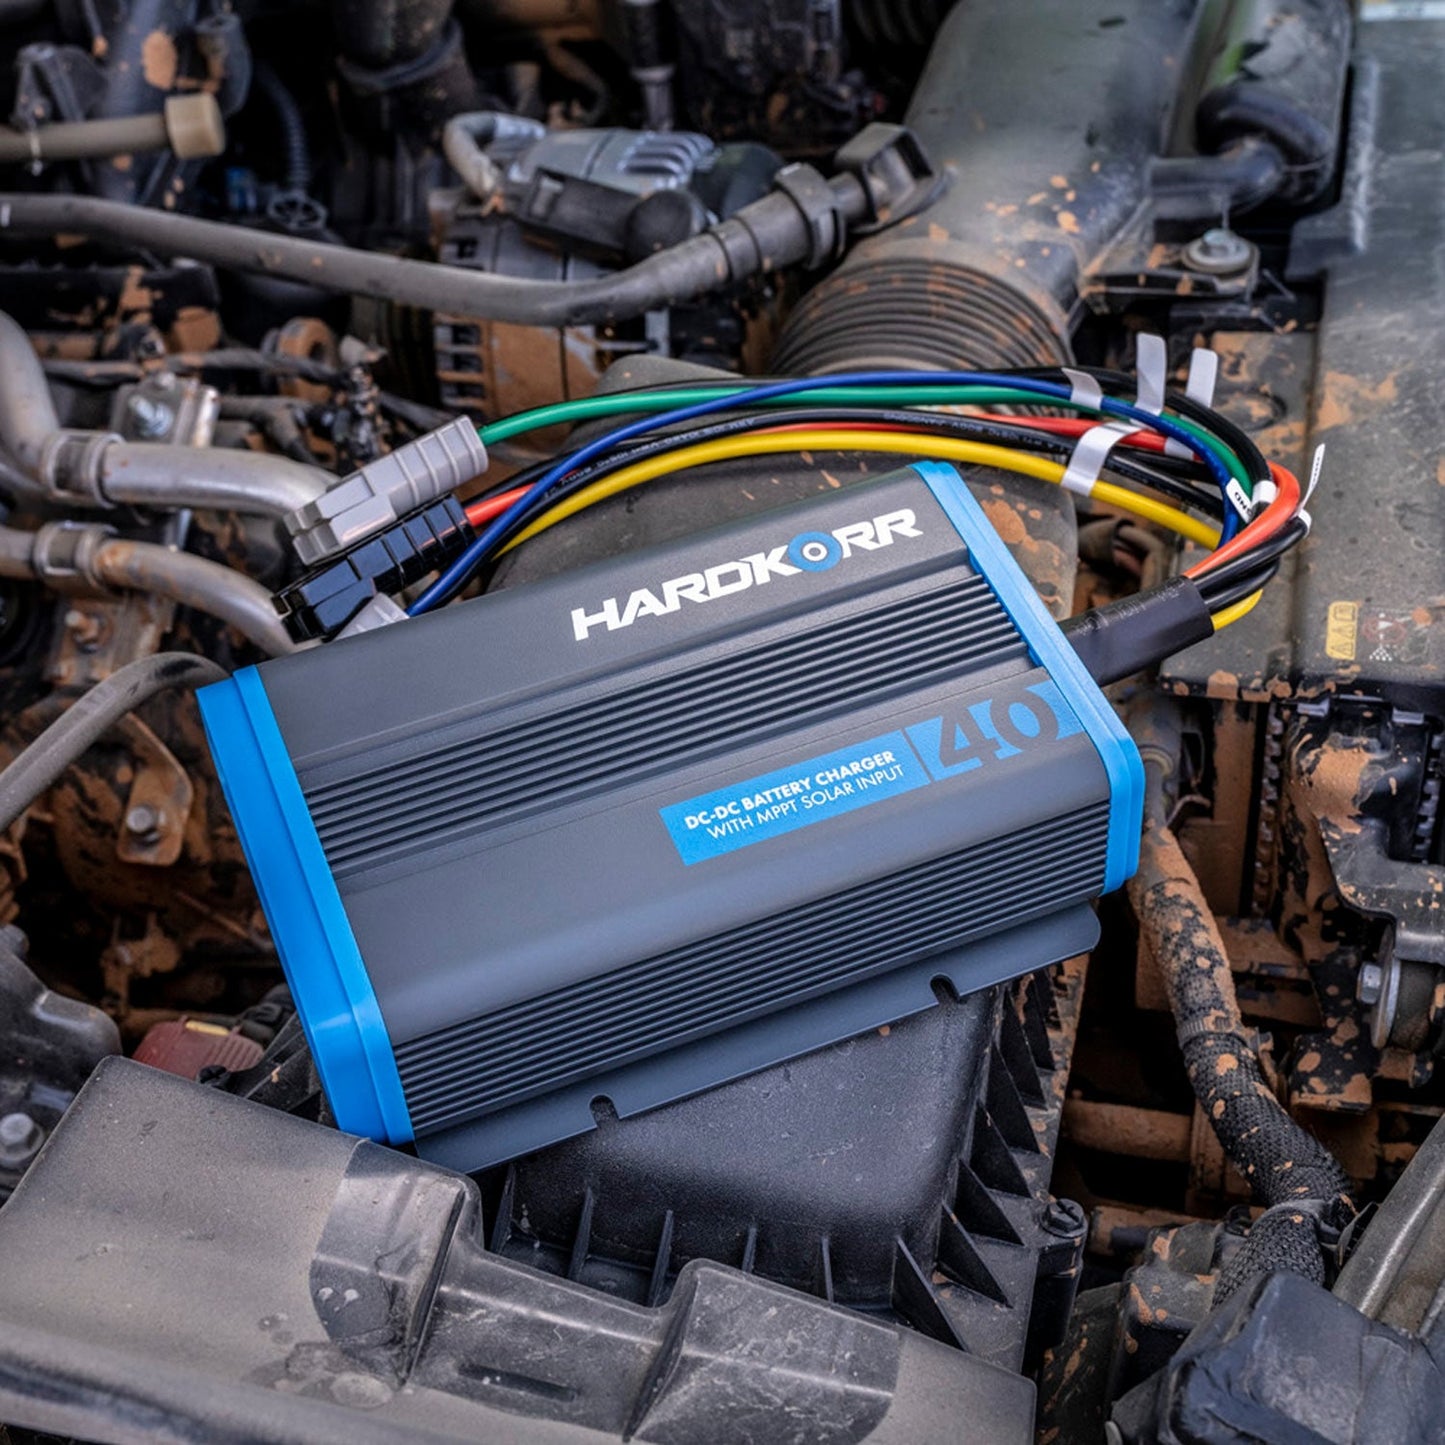 Hard Korr Under Bonnet 40A DC-DC Battery Charger With MPPT Solar Regulator